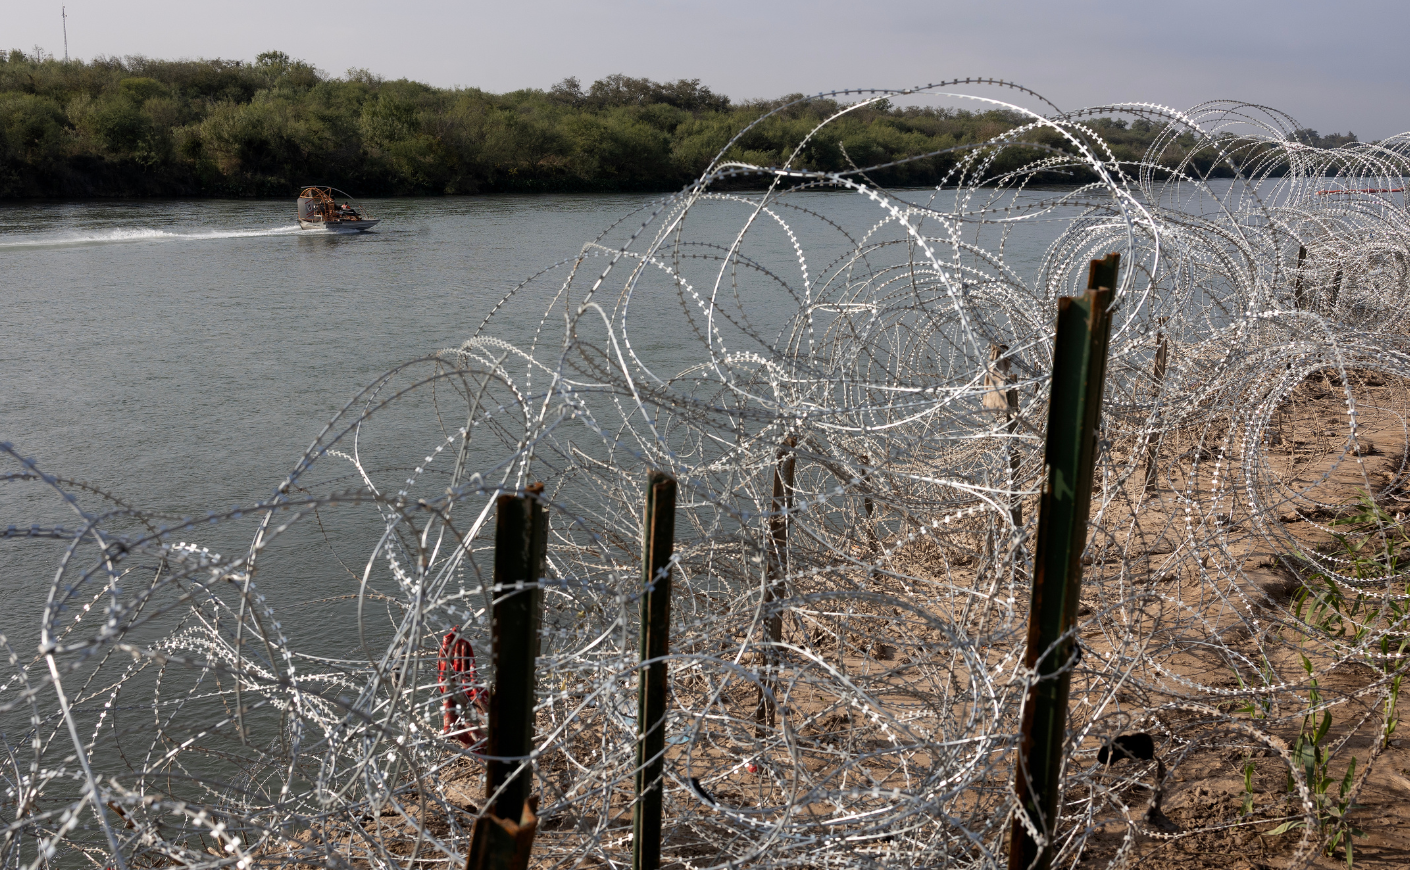 Rio Grande with barbed wire